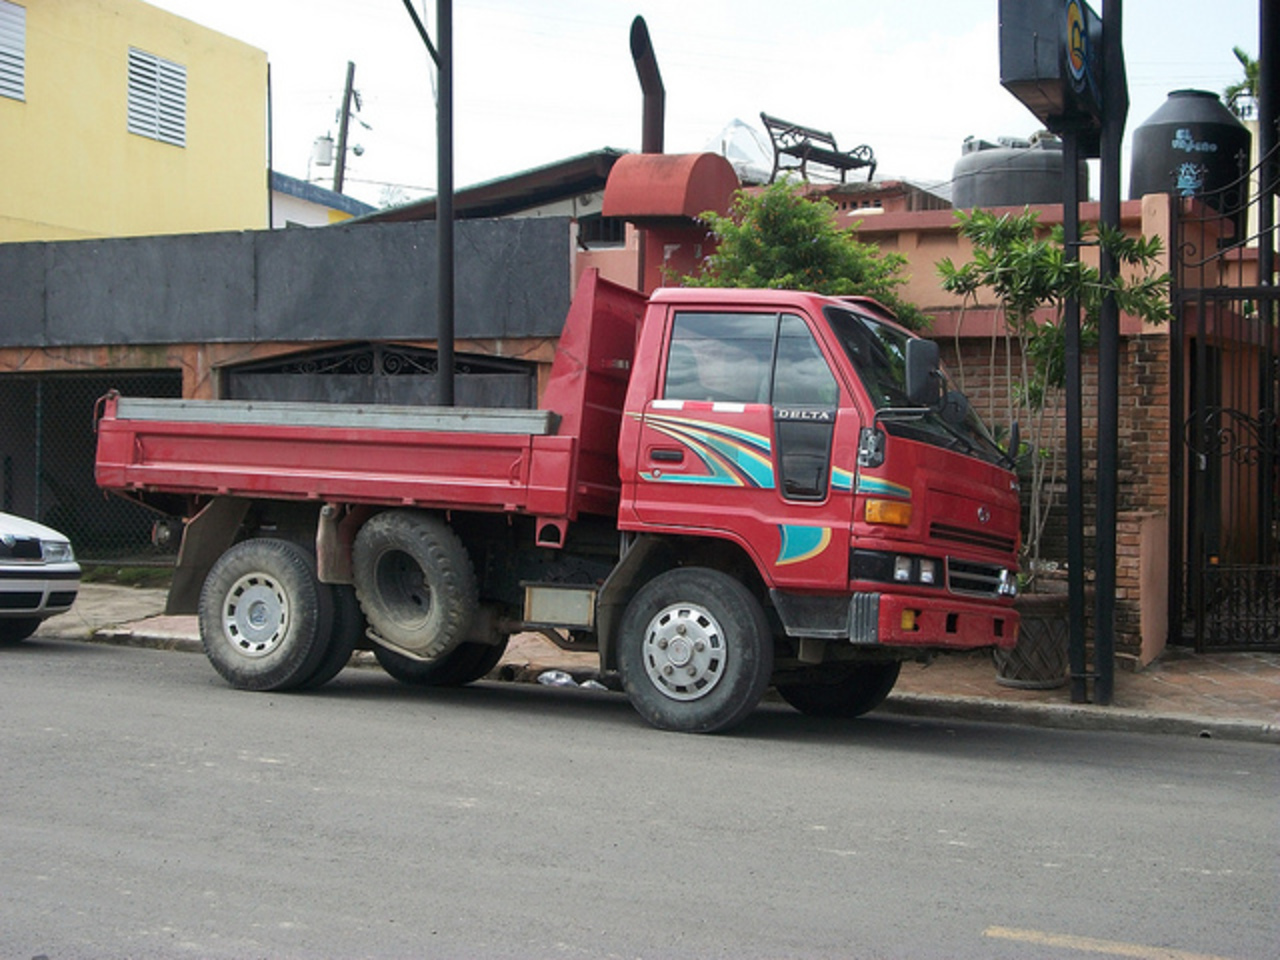 Daihatsu Delta dump truck | Flickr - Photo Sharing!